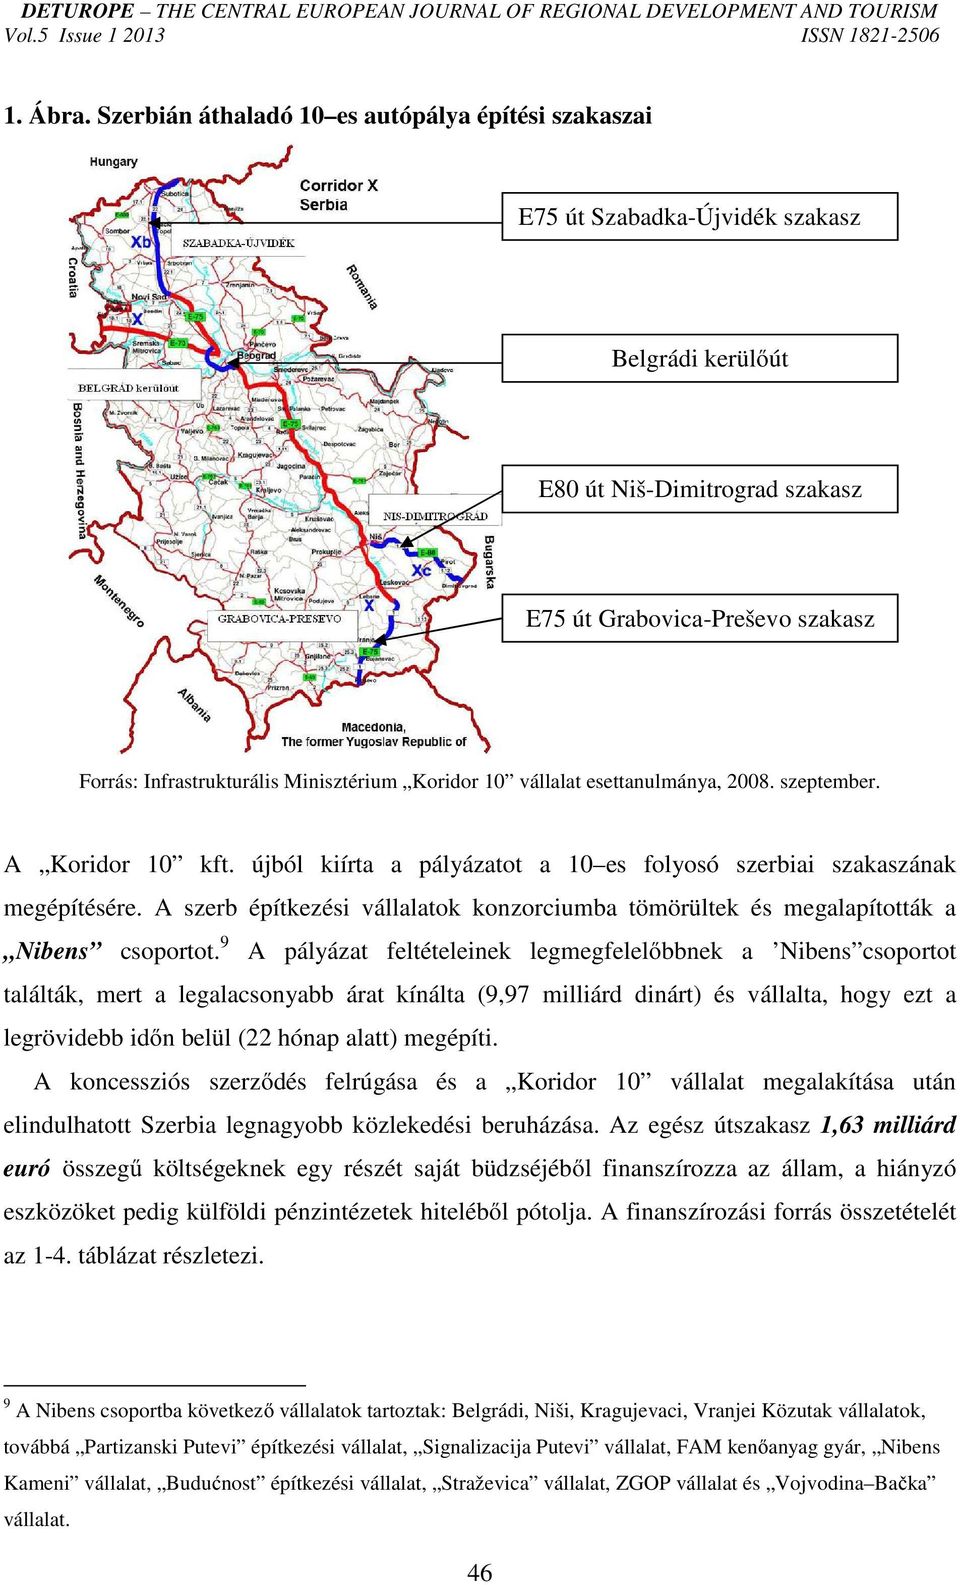 Minisztérium Koridor 10 vállalat esettanulmánya, 2008. szeptember. A Koridor 10 kft. újból kiírta a pályázatot a 10 es folyosó szerbiai szakaszának megépítésére.